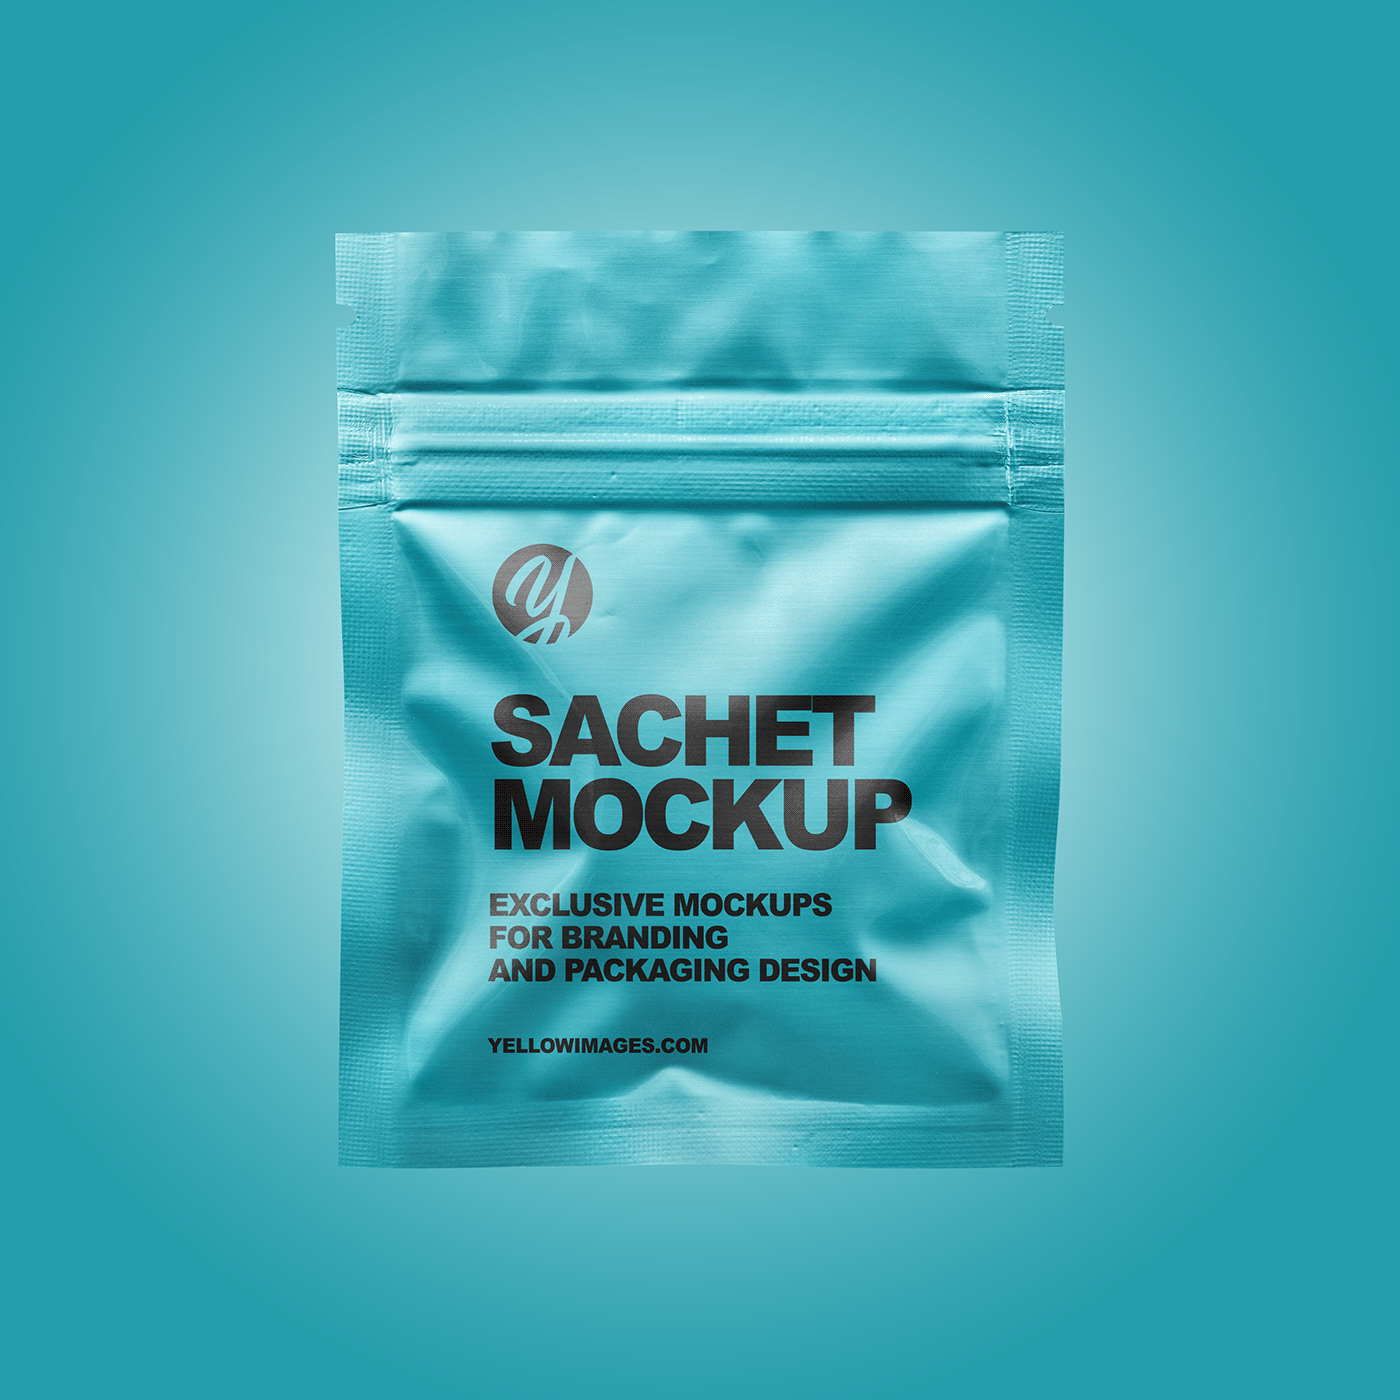 3D design labed Labeldesign Mockup Pack package psd sachet mockup visualization